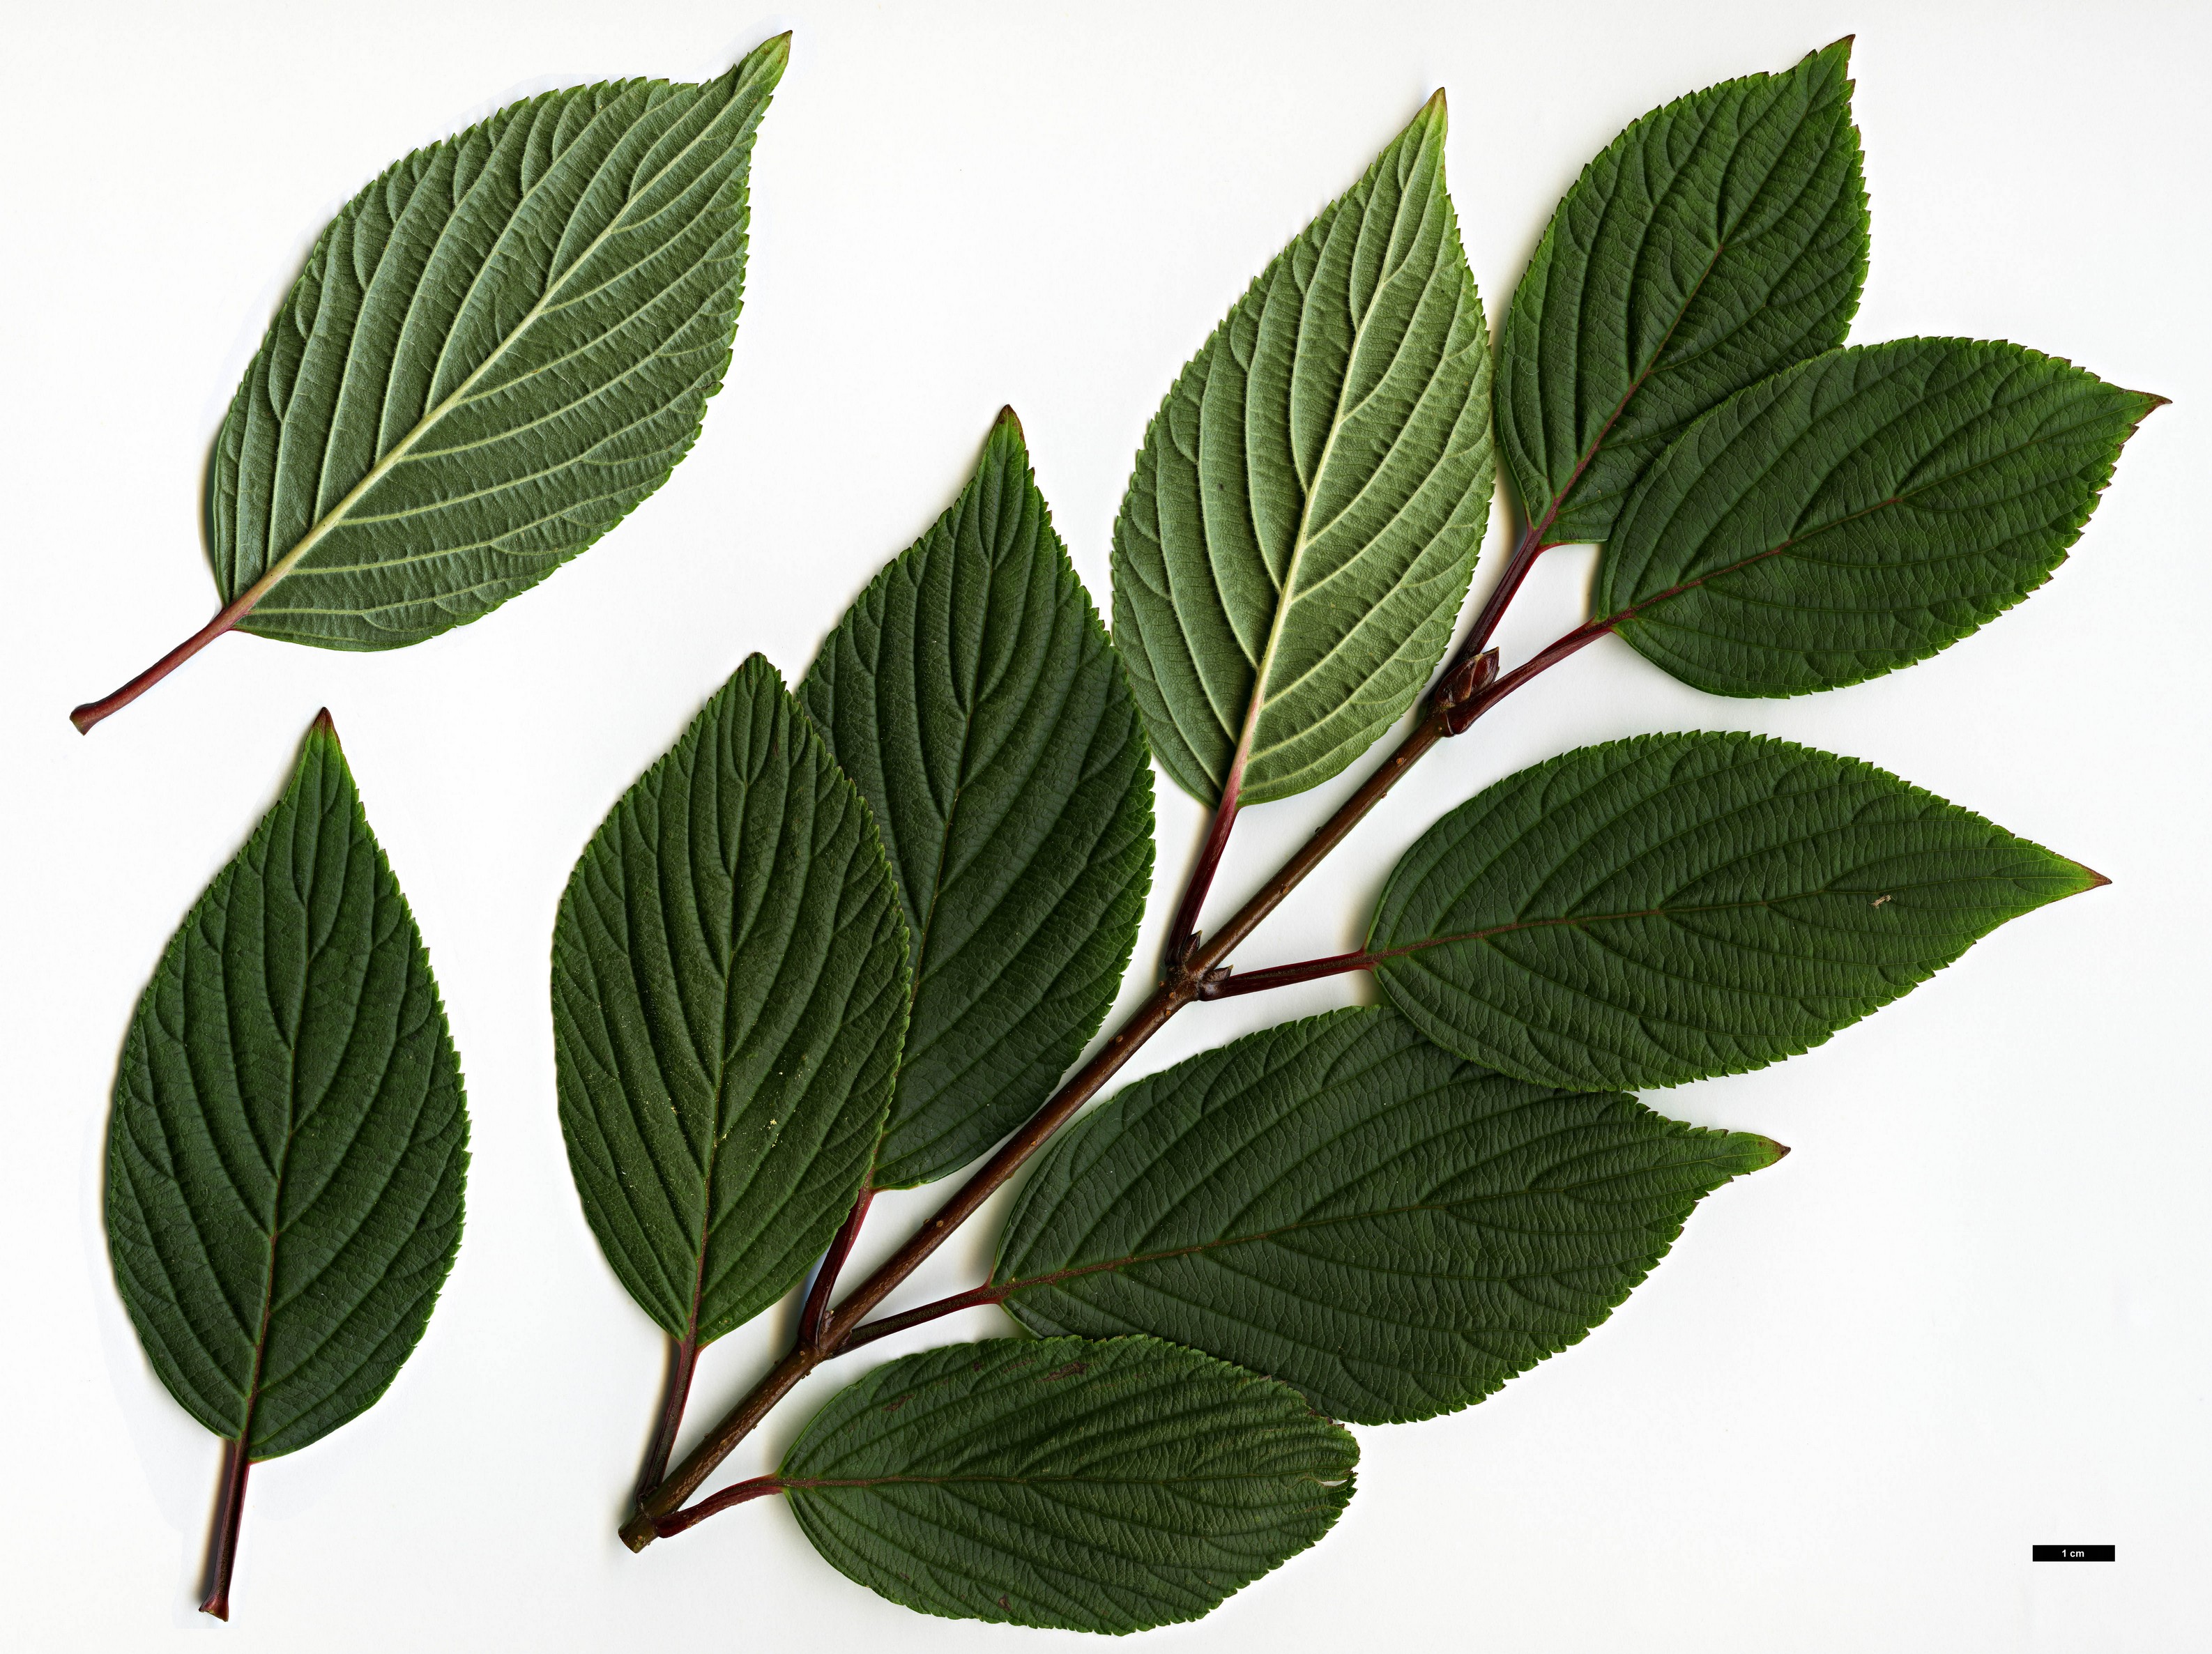 High resolution image: Family: Adoxaceae - Genus: Viburnum - Taxon: grandiflorum - SpeciesSub: f. grandiflorum